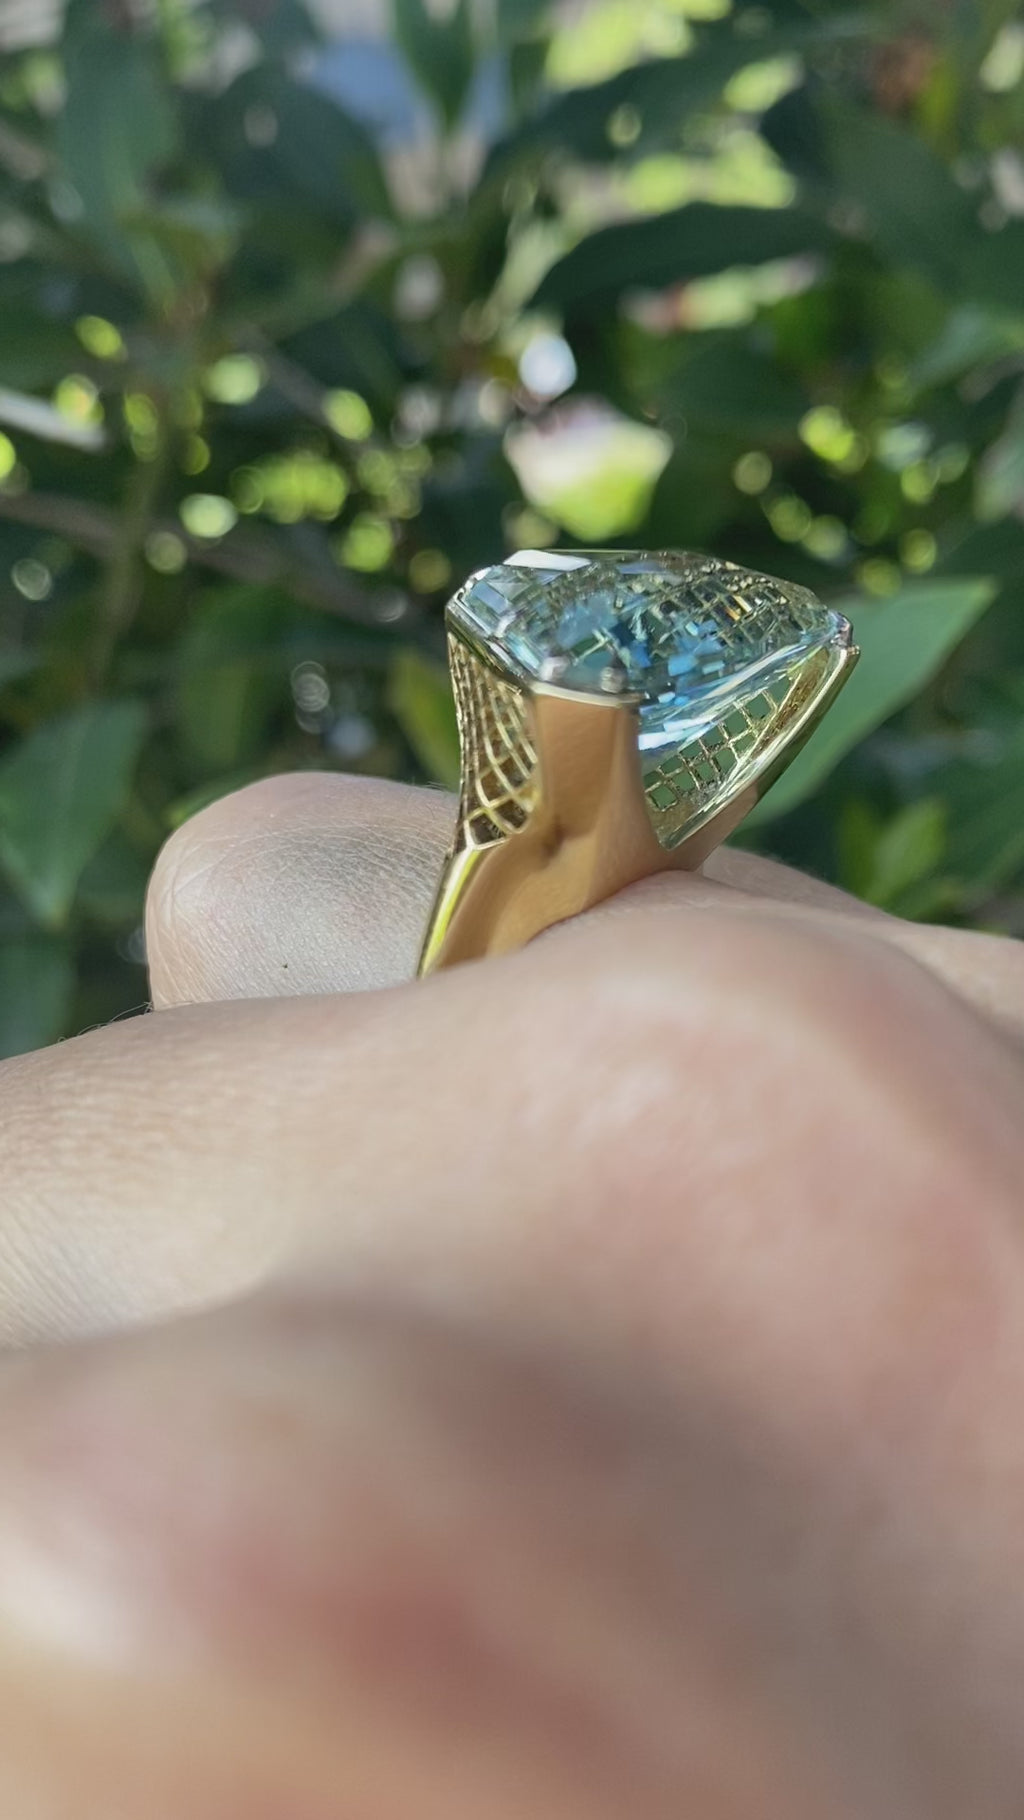 Nigel O'Reilly, Aquamarine masterpiece gold ring